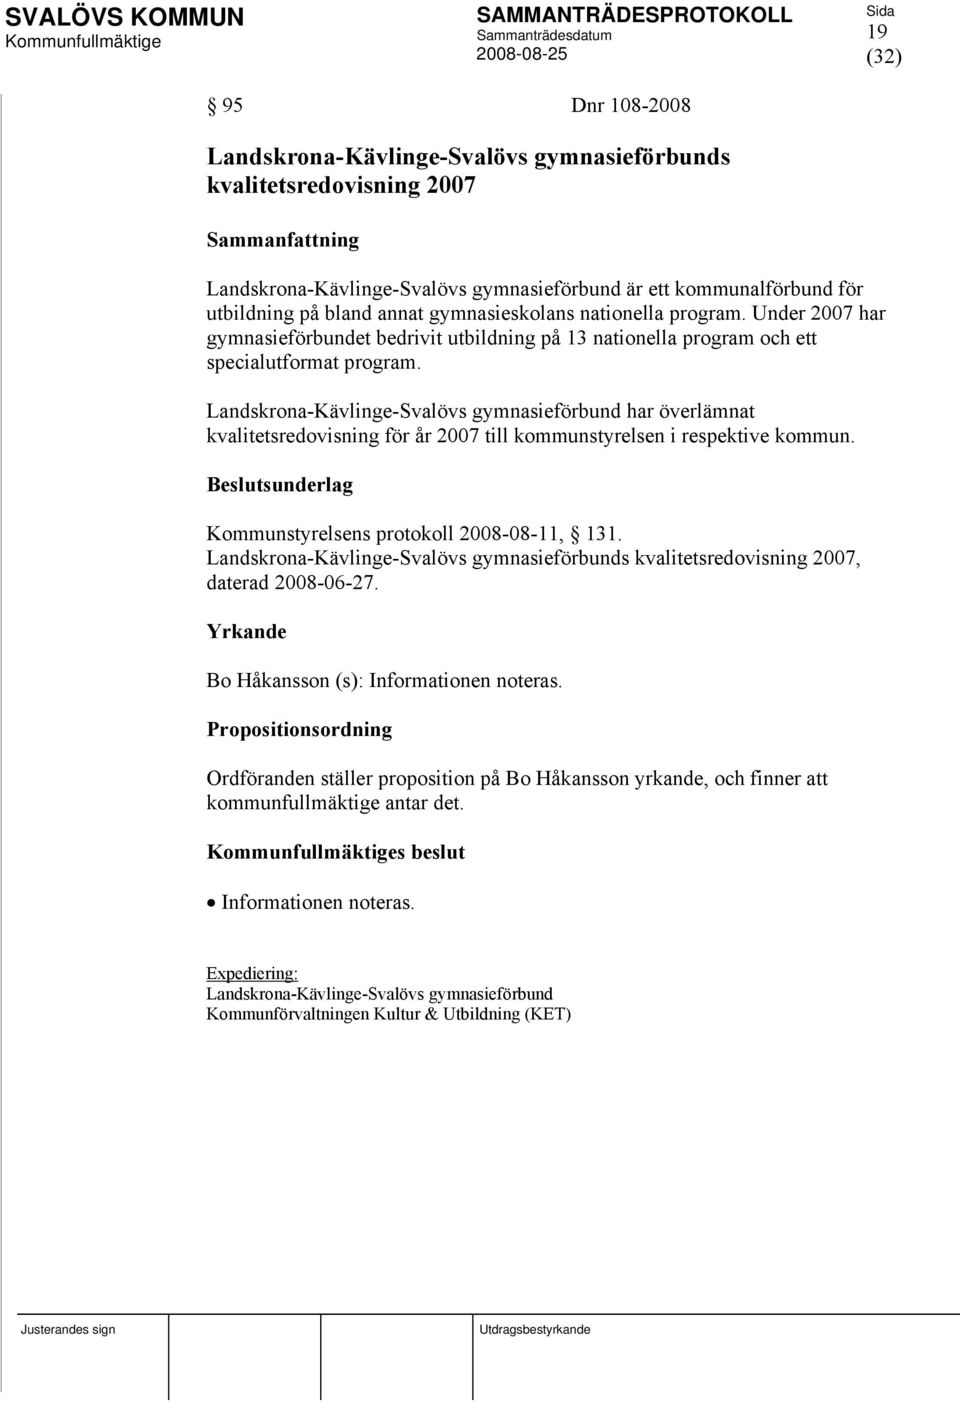 Landskrona-Kävlinge-Svalövs gymnasieförbund har överlämnat kvalitetsredovisning för år 2007 till kommunstyrelsen i respektive kommun. Kommunstyrelsens protokoll 2008-08-11, 131.